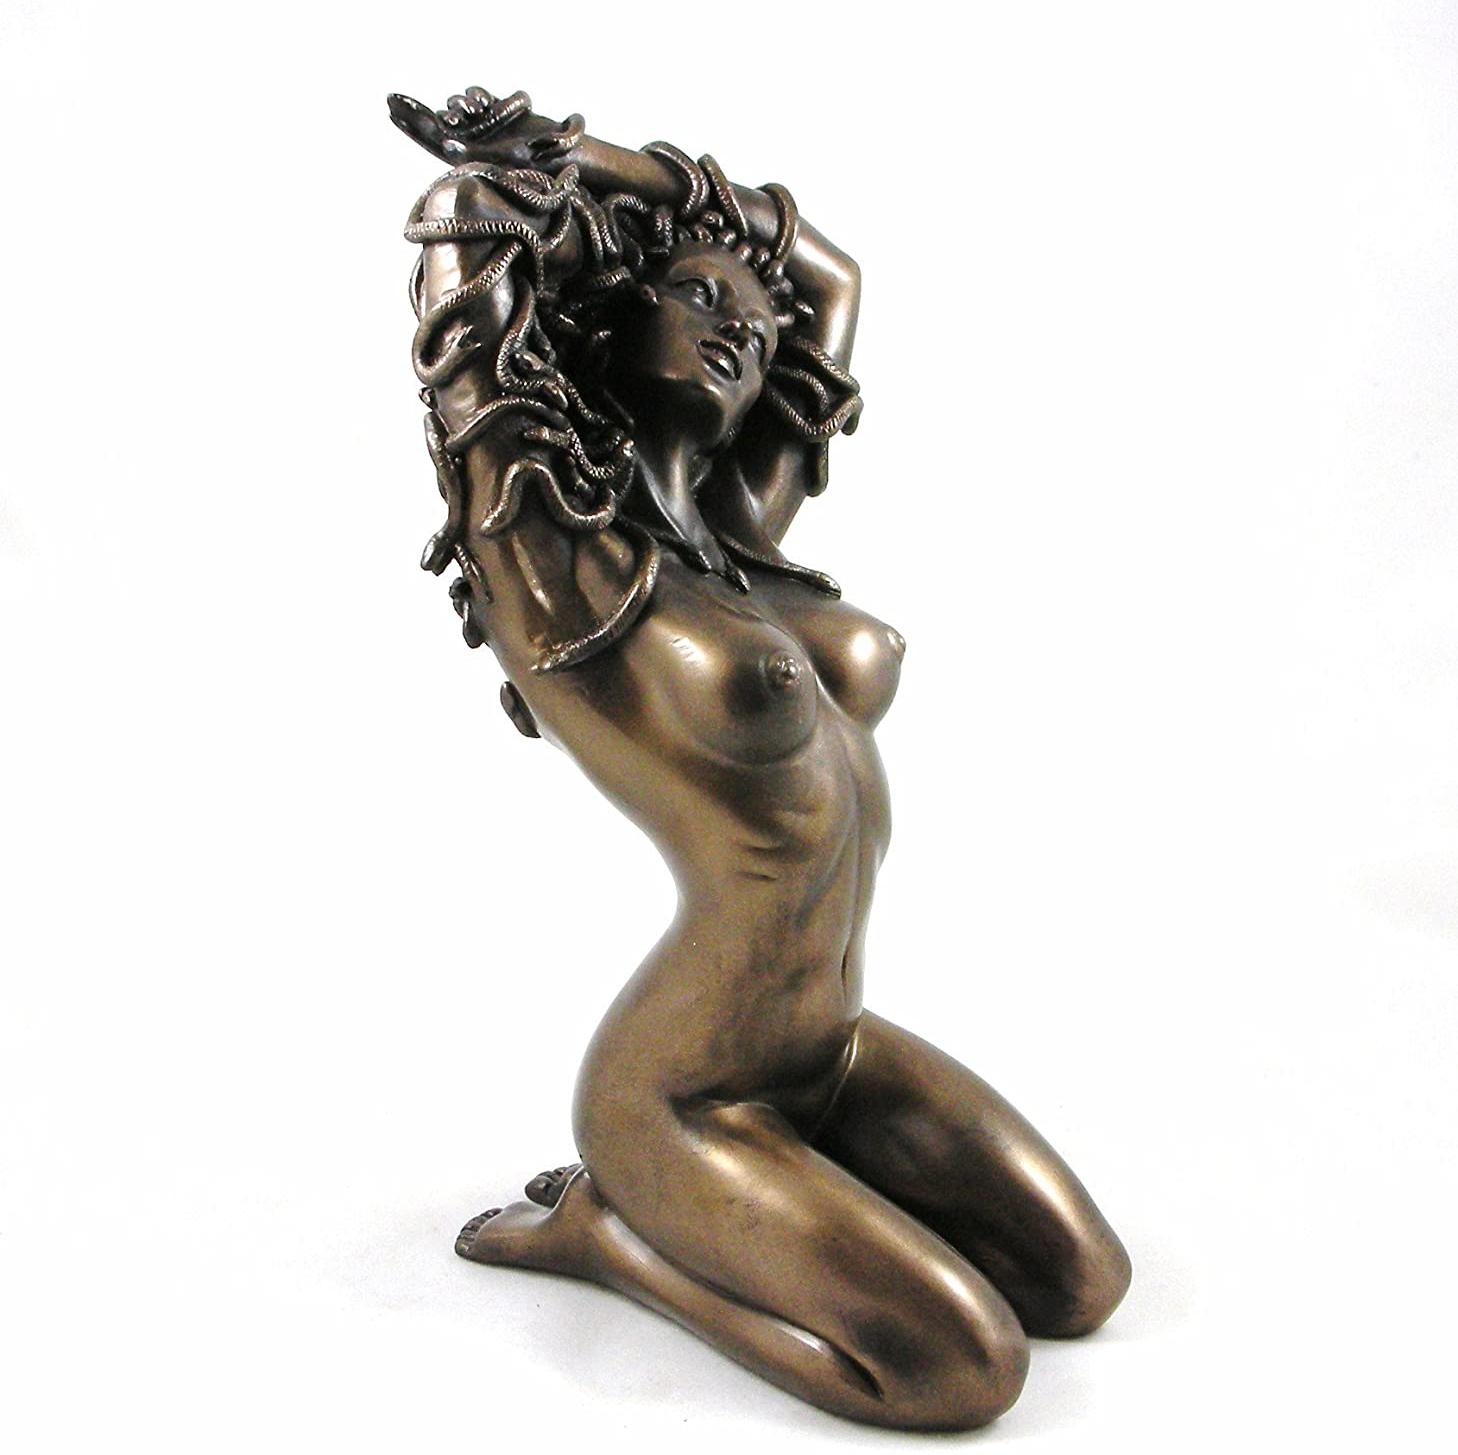 Temptation Medusa Sculpture Cold Cast Bronze